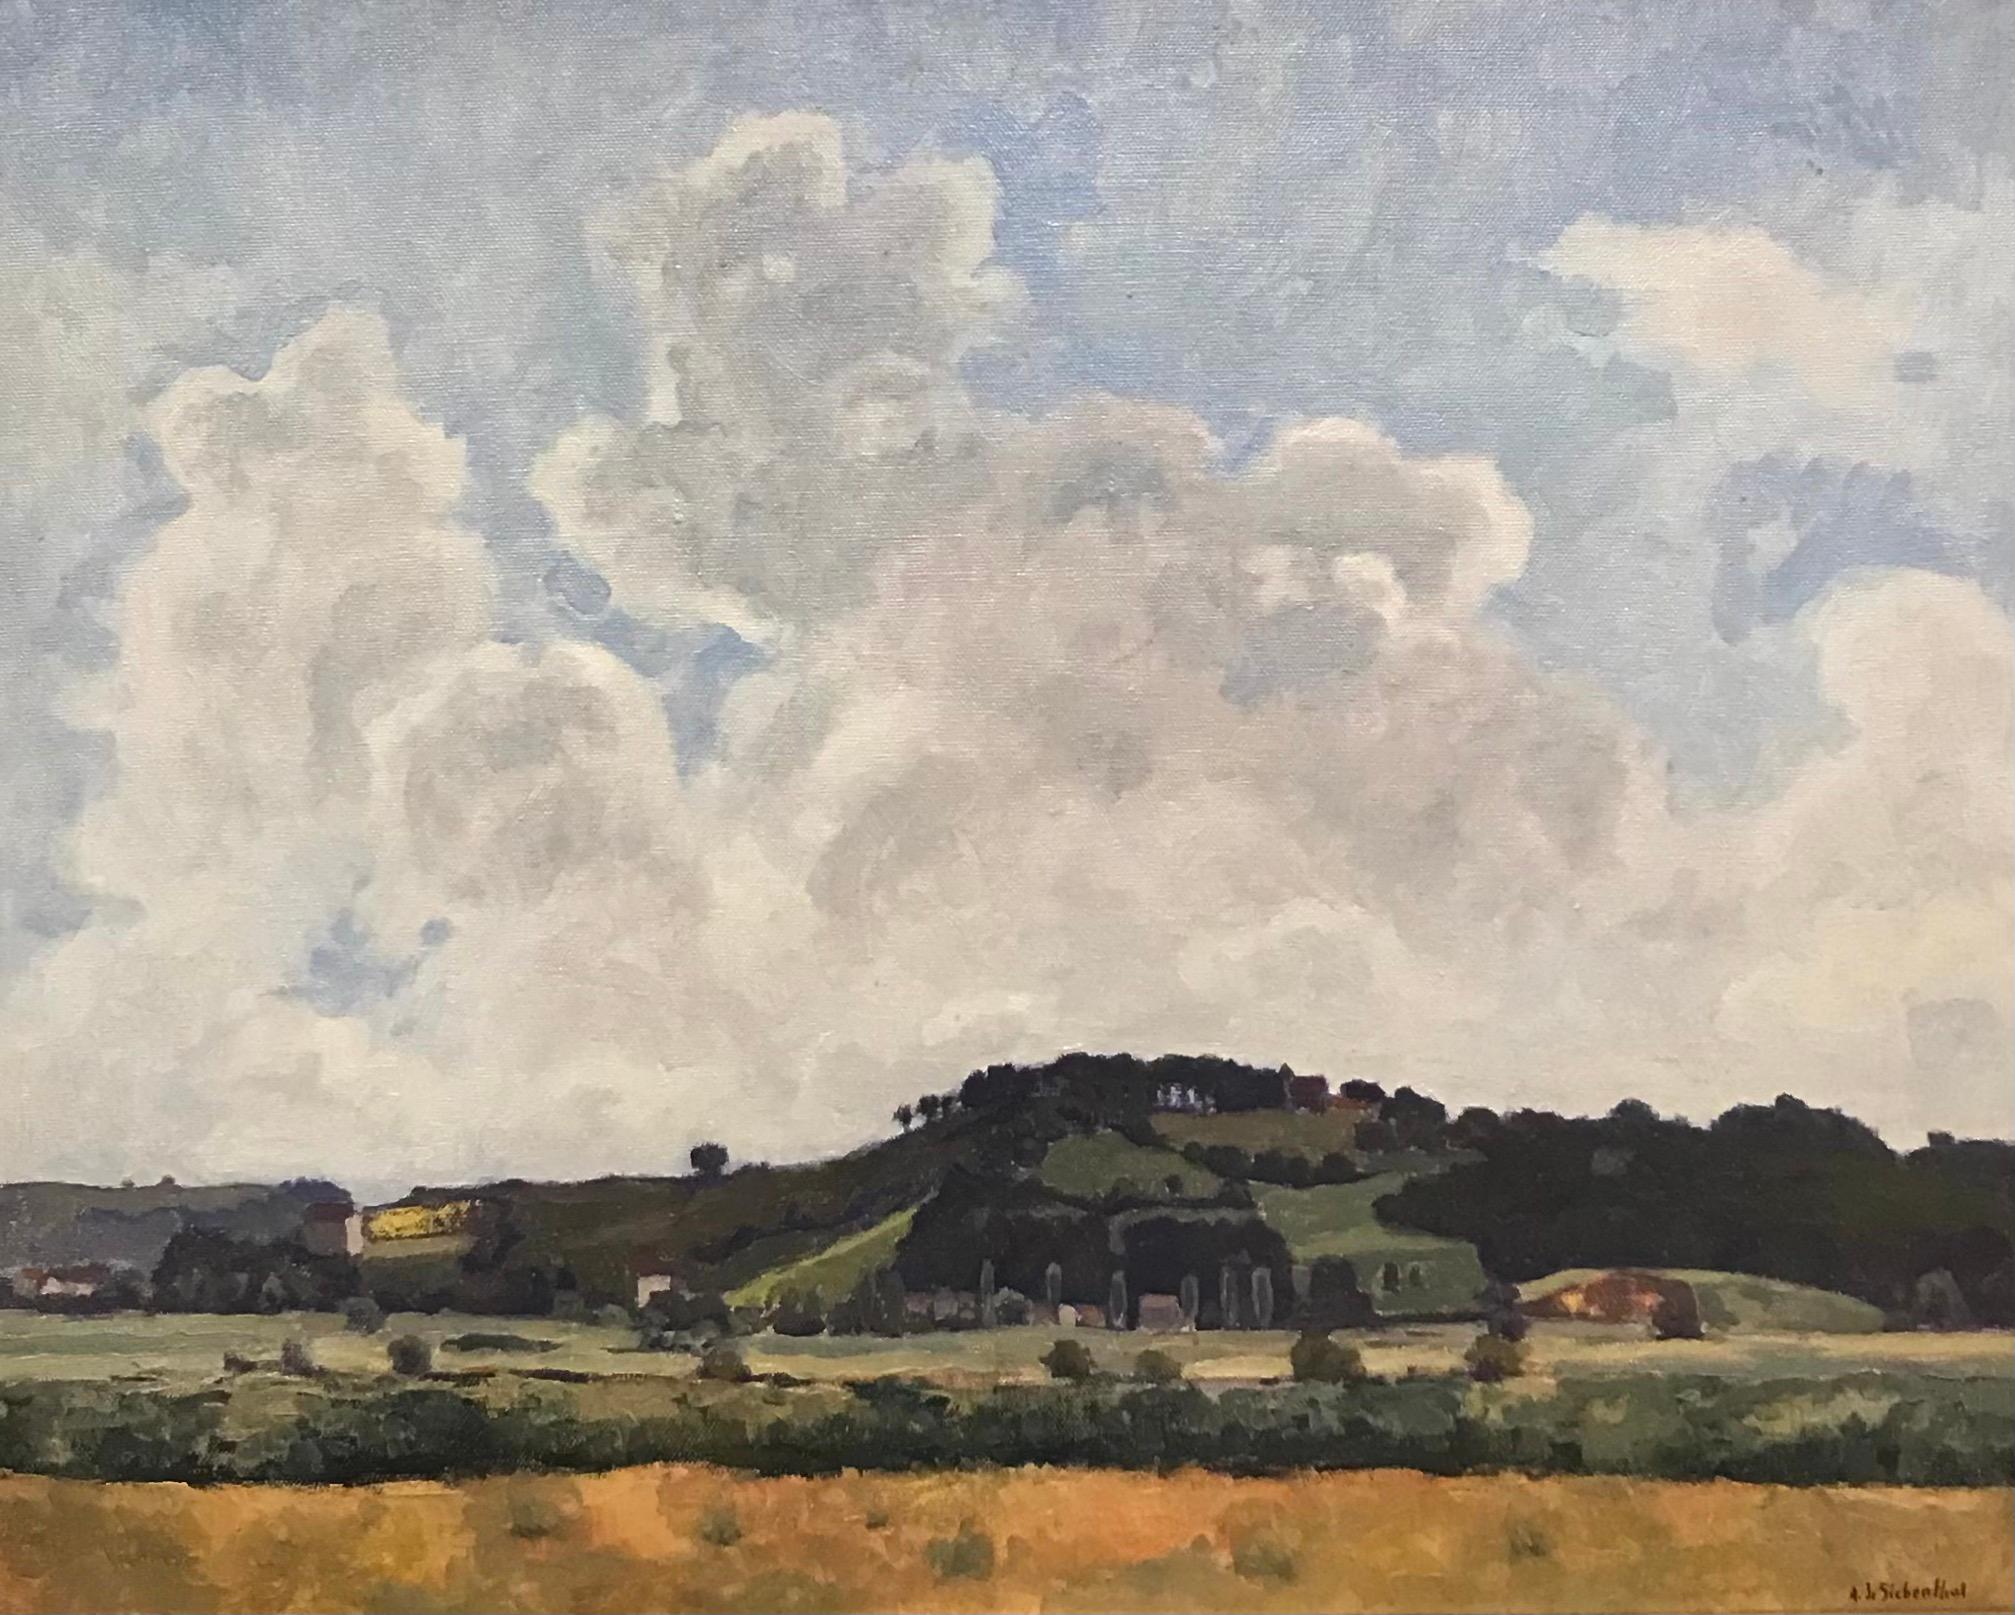 Adolphe DE SIEBENTHAL Landscape Painting - Montagny by Adolphe de Siebenthal - Oil on canvas 50x61 cm